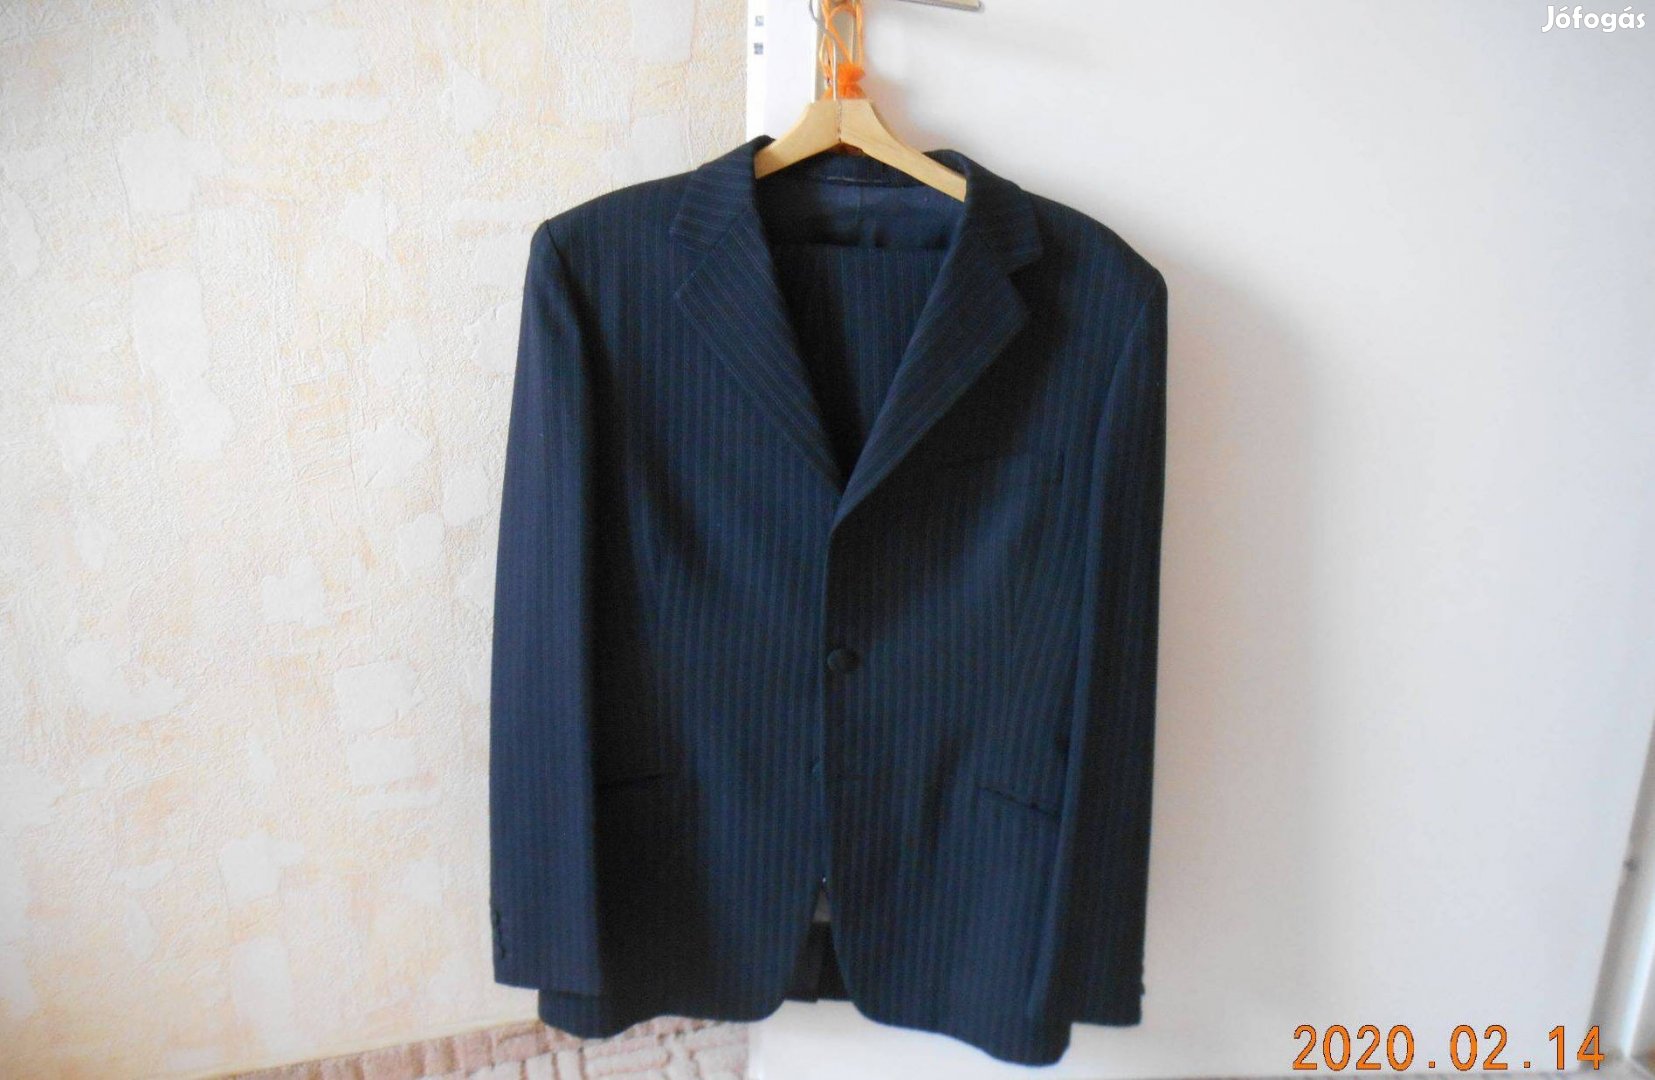 48-50-es méretű fekete gyapjú öltöny